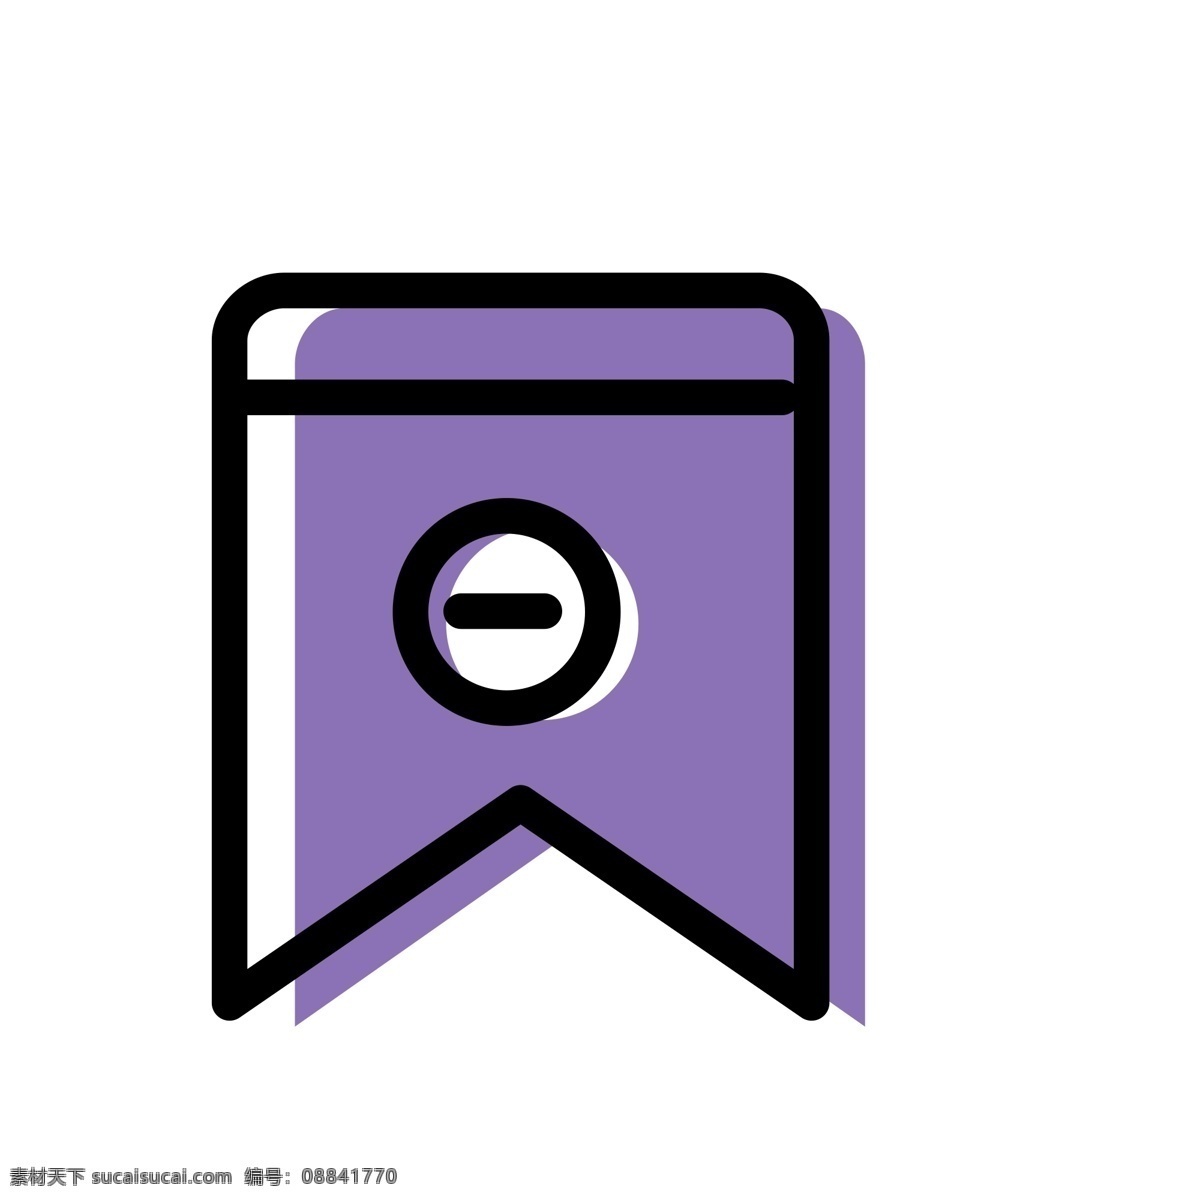 紫色 缩小 镜 图标 免 抠 图 缩小镜 电脑图标 ui应用图标 卡通图案 卡通插画 红旗